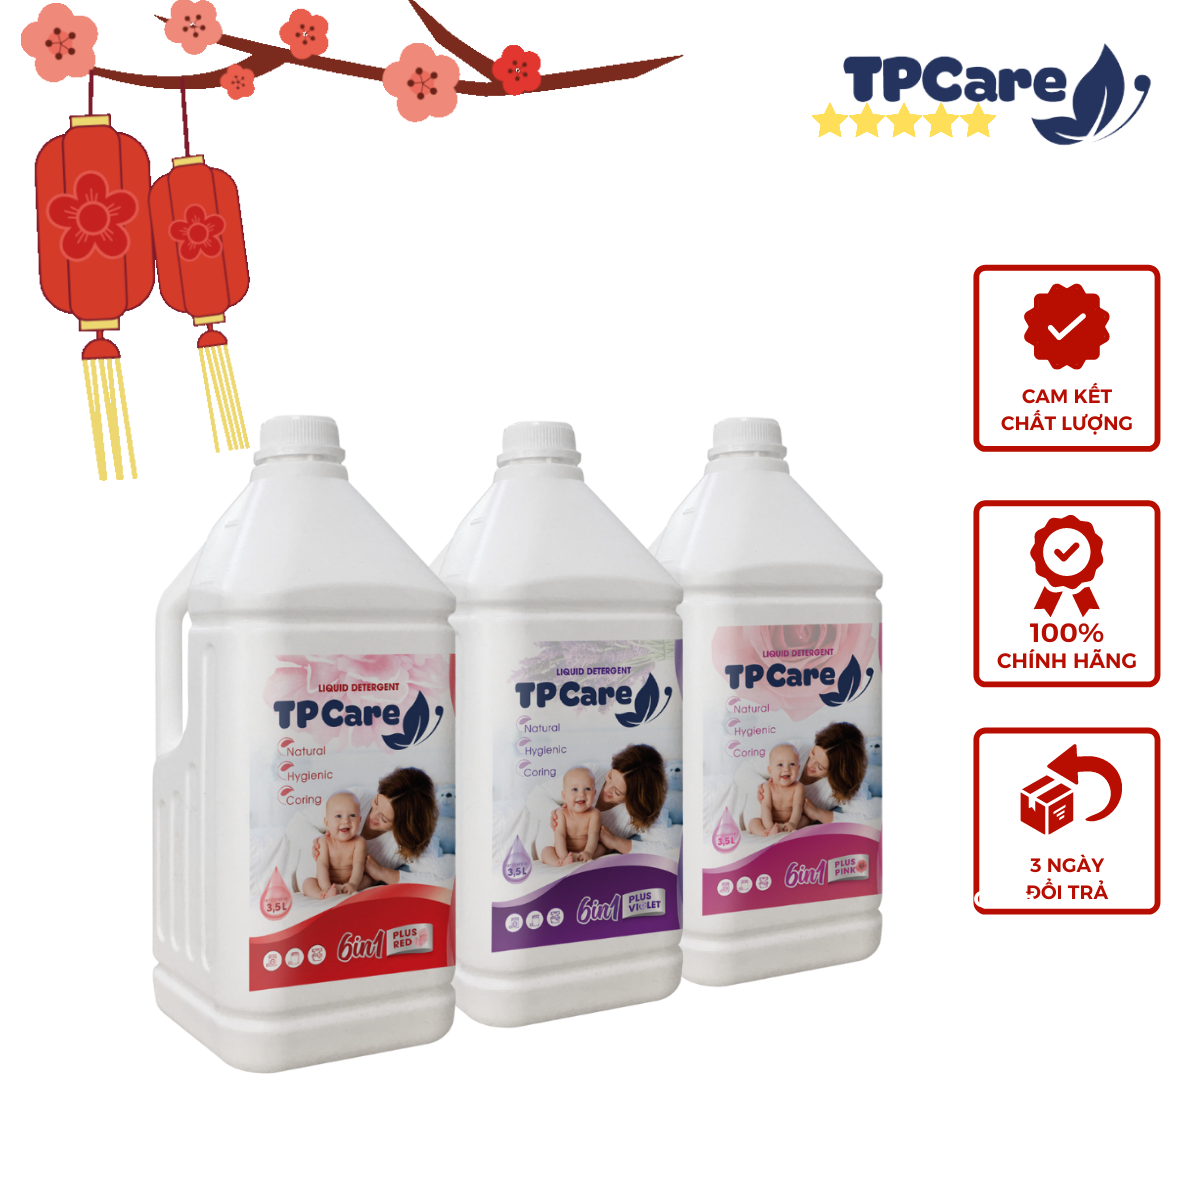 Trải nghiệm nước giặt hương hoa TPCare 6in1 chẳng ngại mùi hôi 